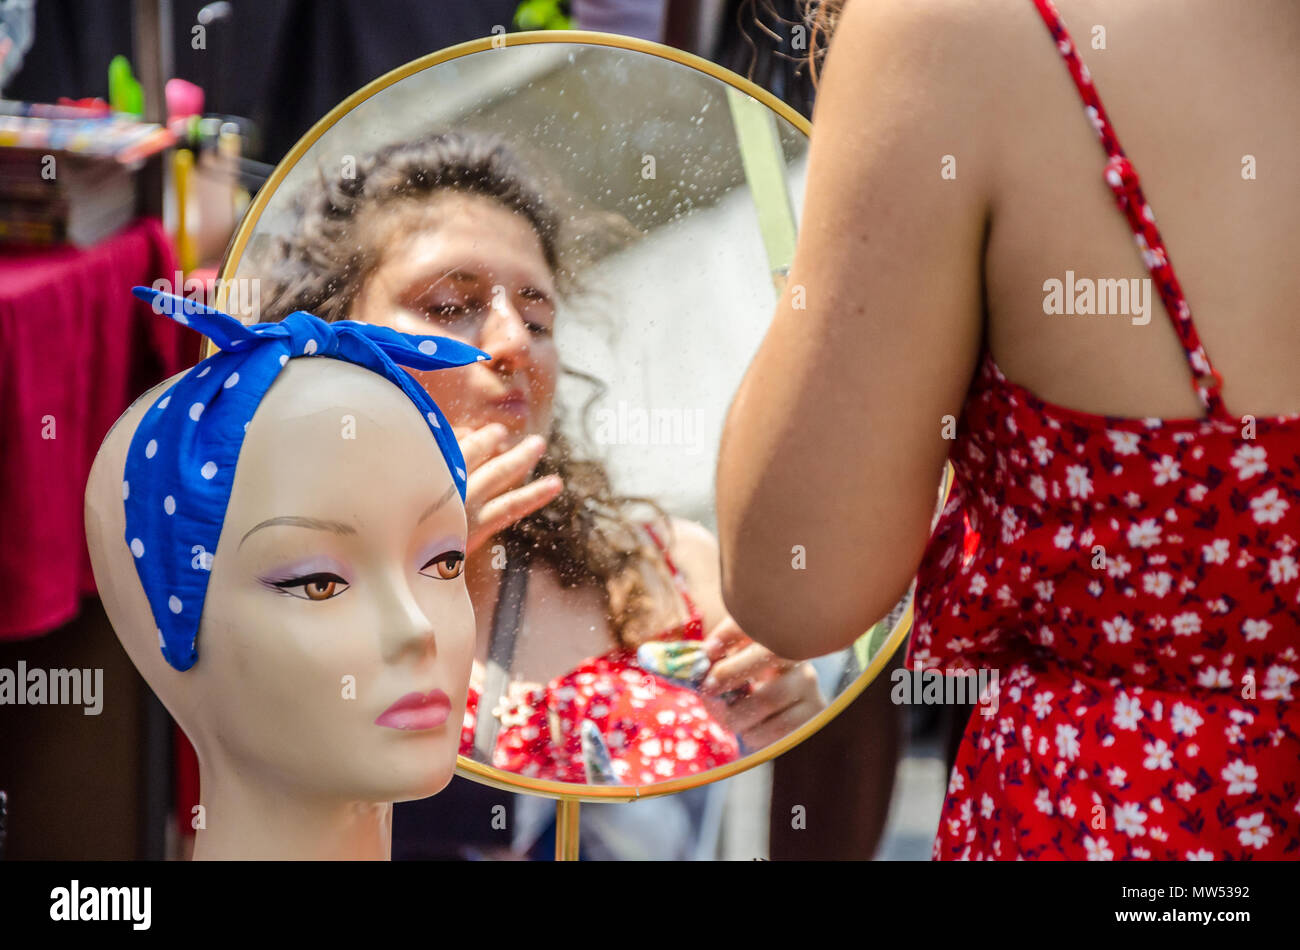 Un adulto joven se mira a sí misma en un espejo en un puesto en el mercado. Foto de stock